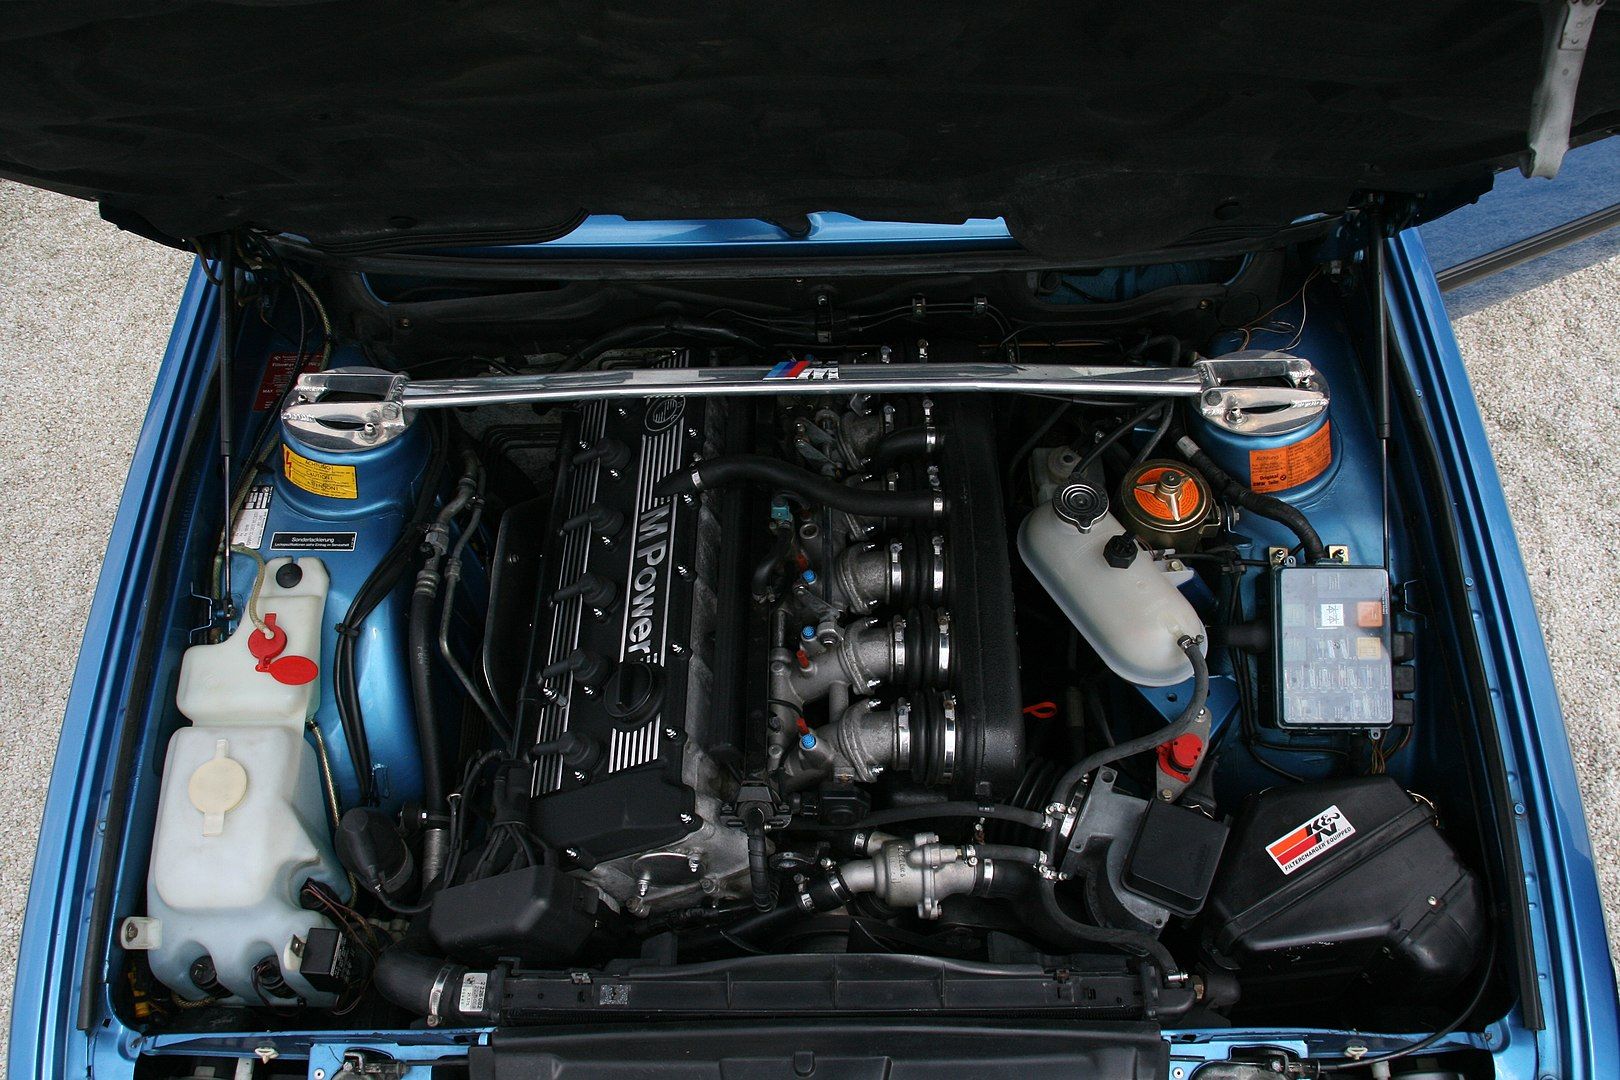 BMW 535i engine